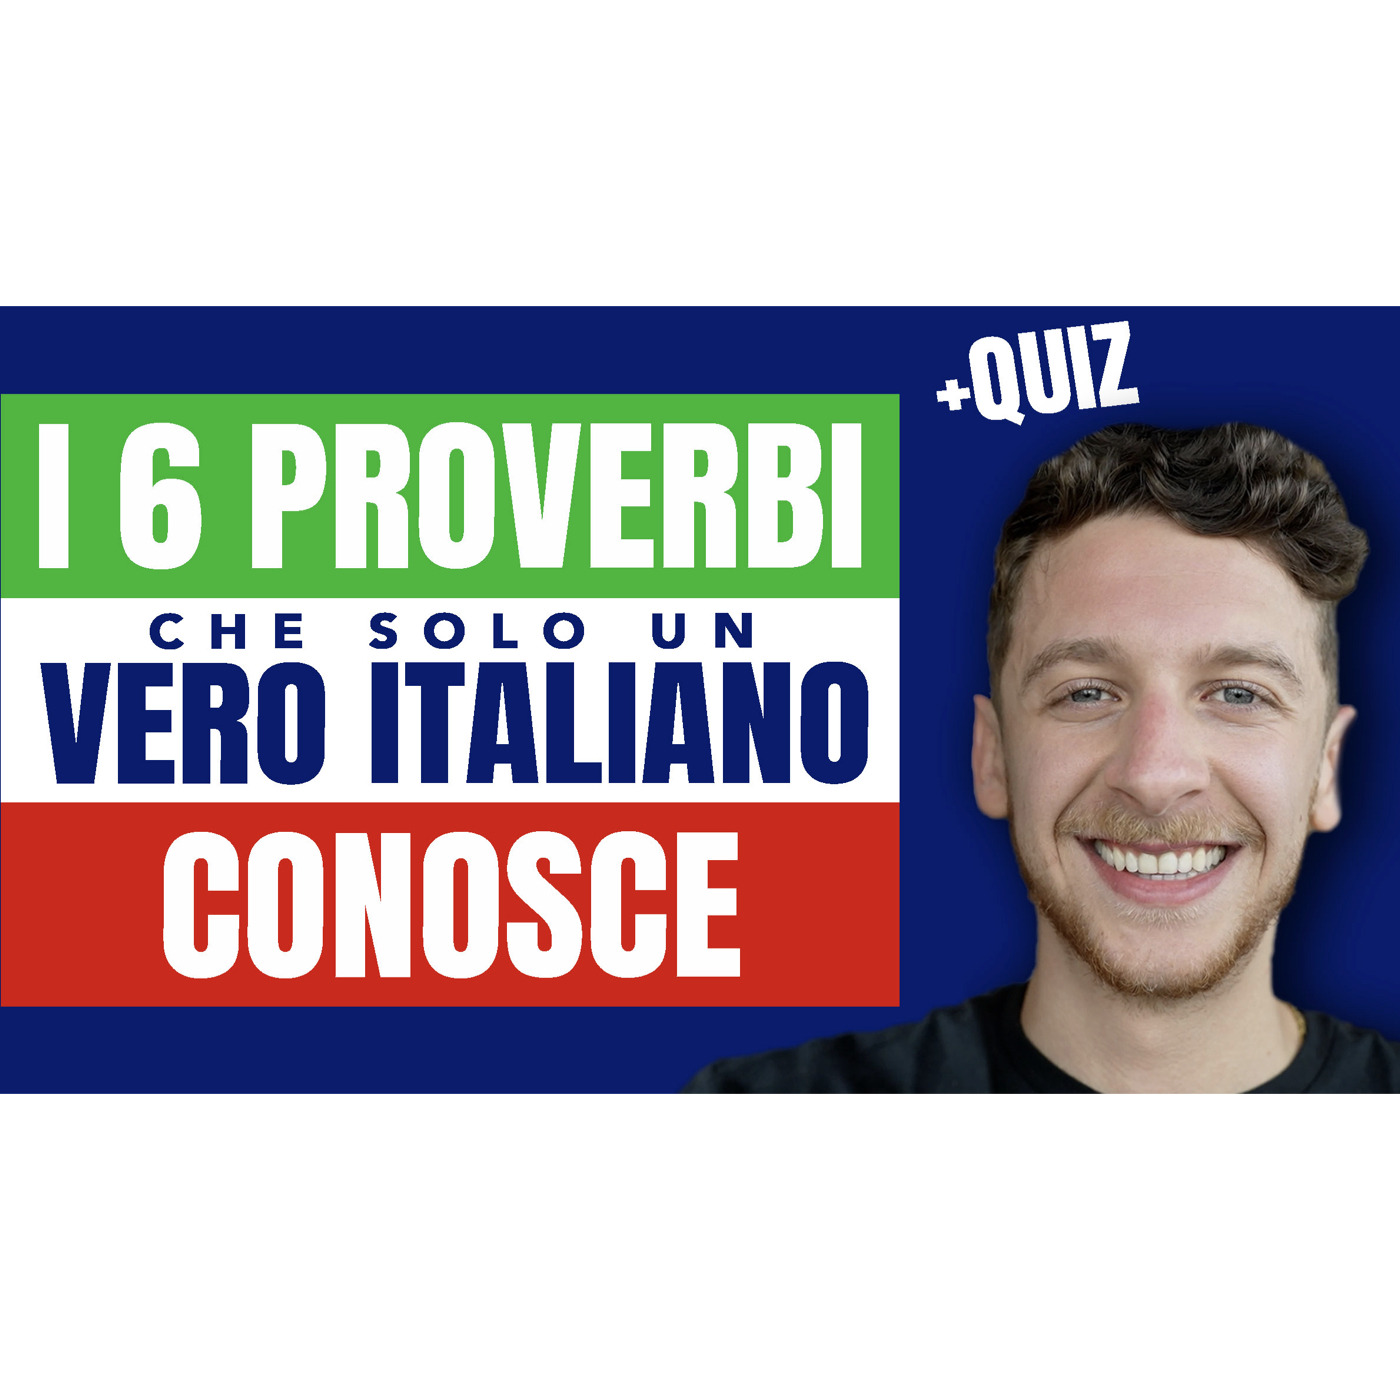 Episode 558: 6 Proverbi Più Conosciuti in Italia | Imparare l’Italiano